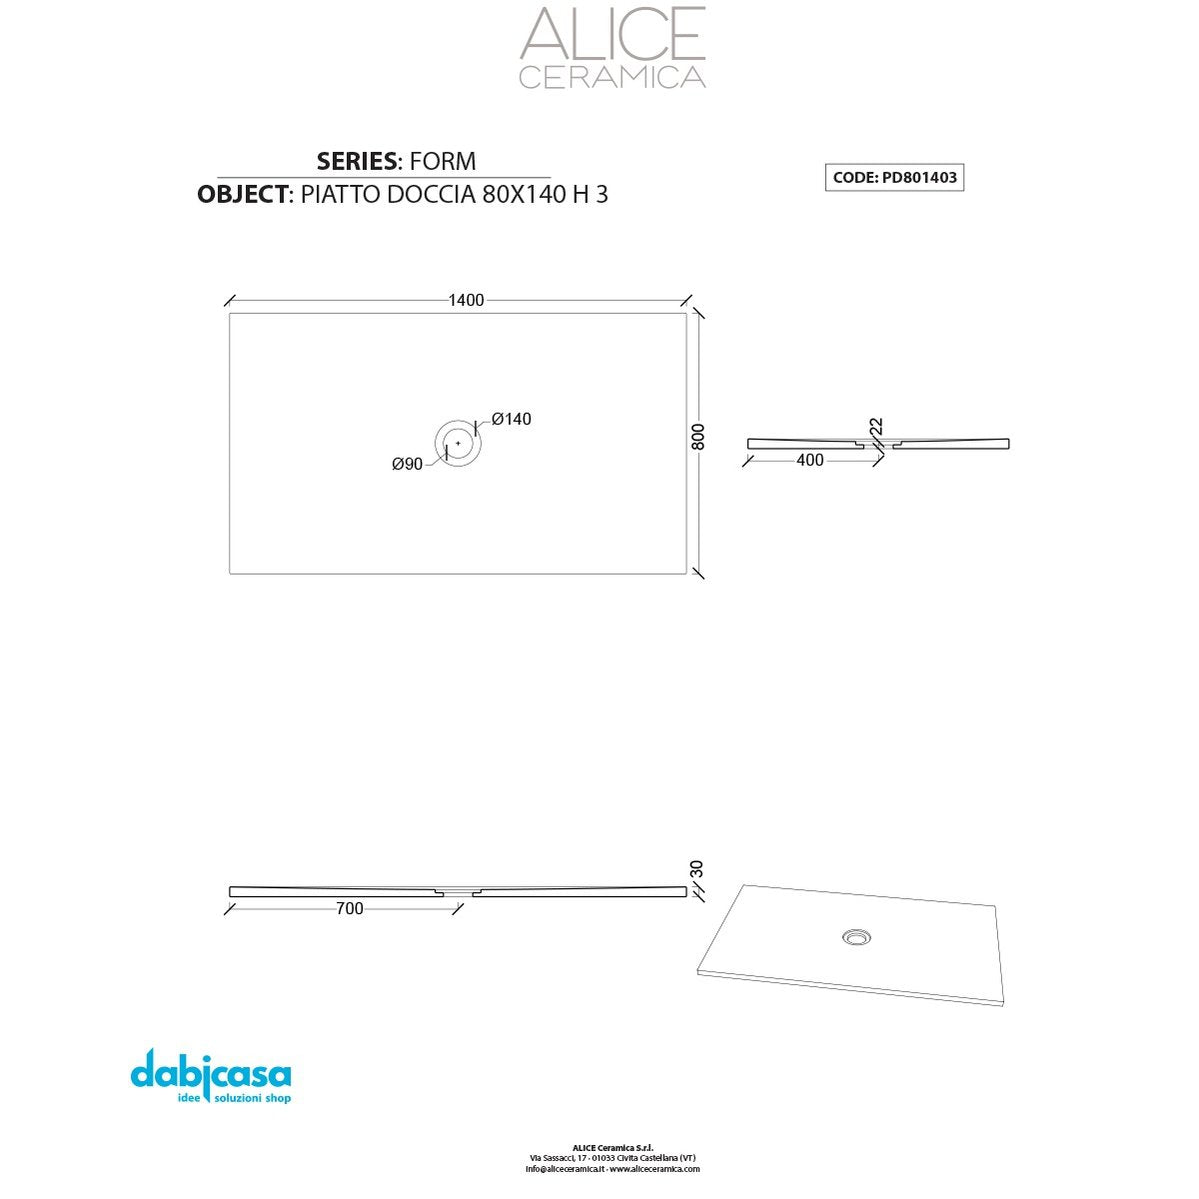 Piatto Doccia Alice Ceramica "Serie Form" 80x140 cm h 3 Colore Grigio Opaco freeshipping - Dabicasa